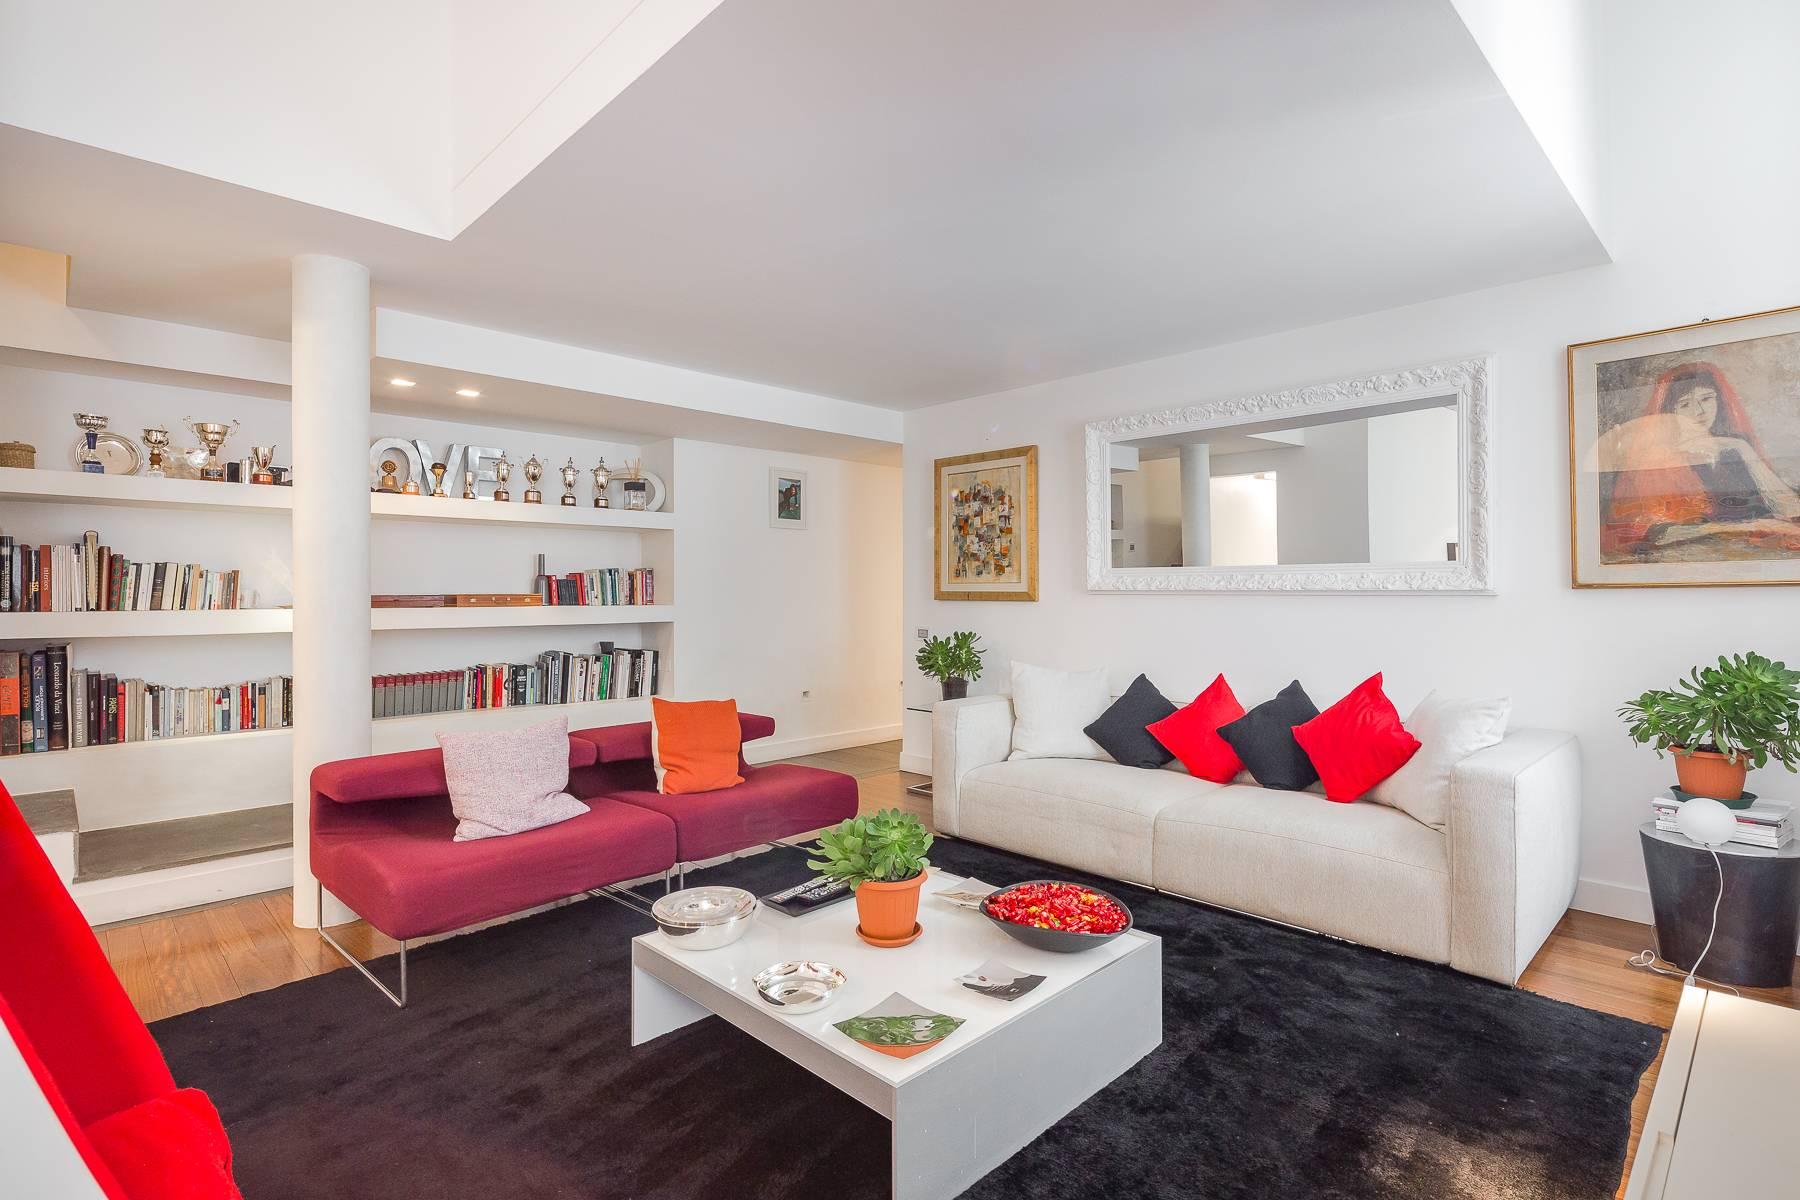 Apartment / loft in Brera district, Via Montebello / De Marchi - 8